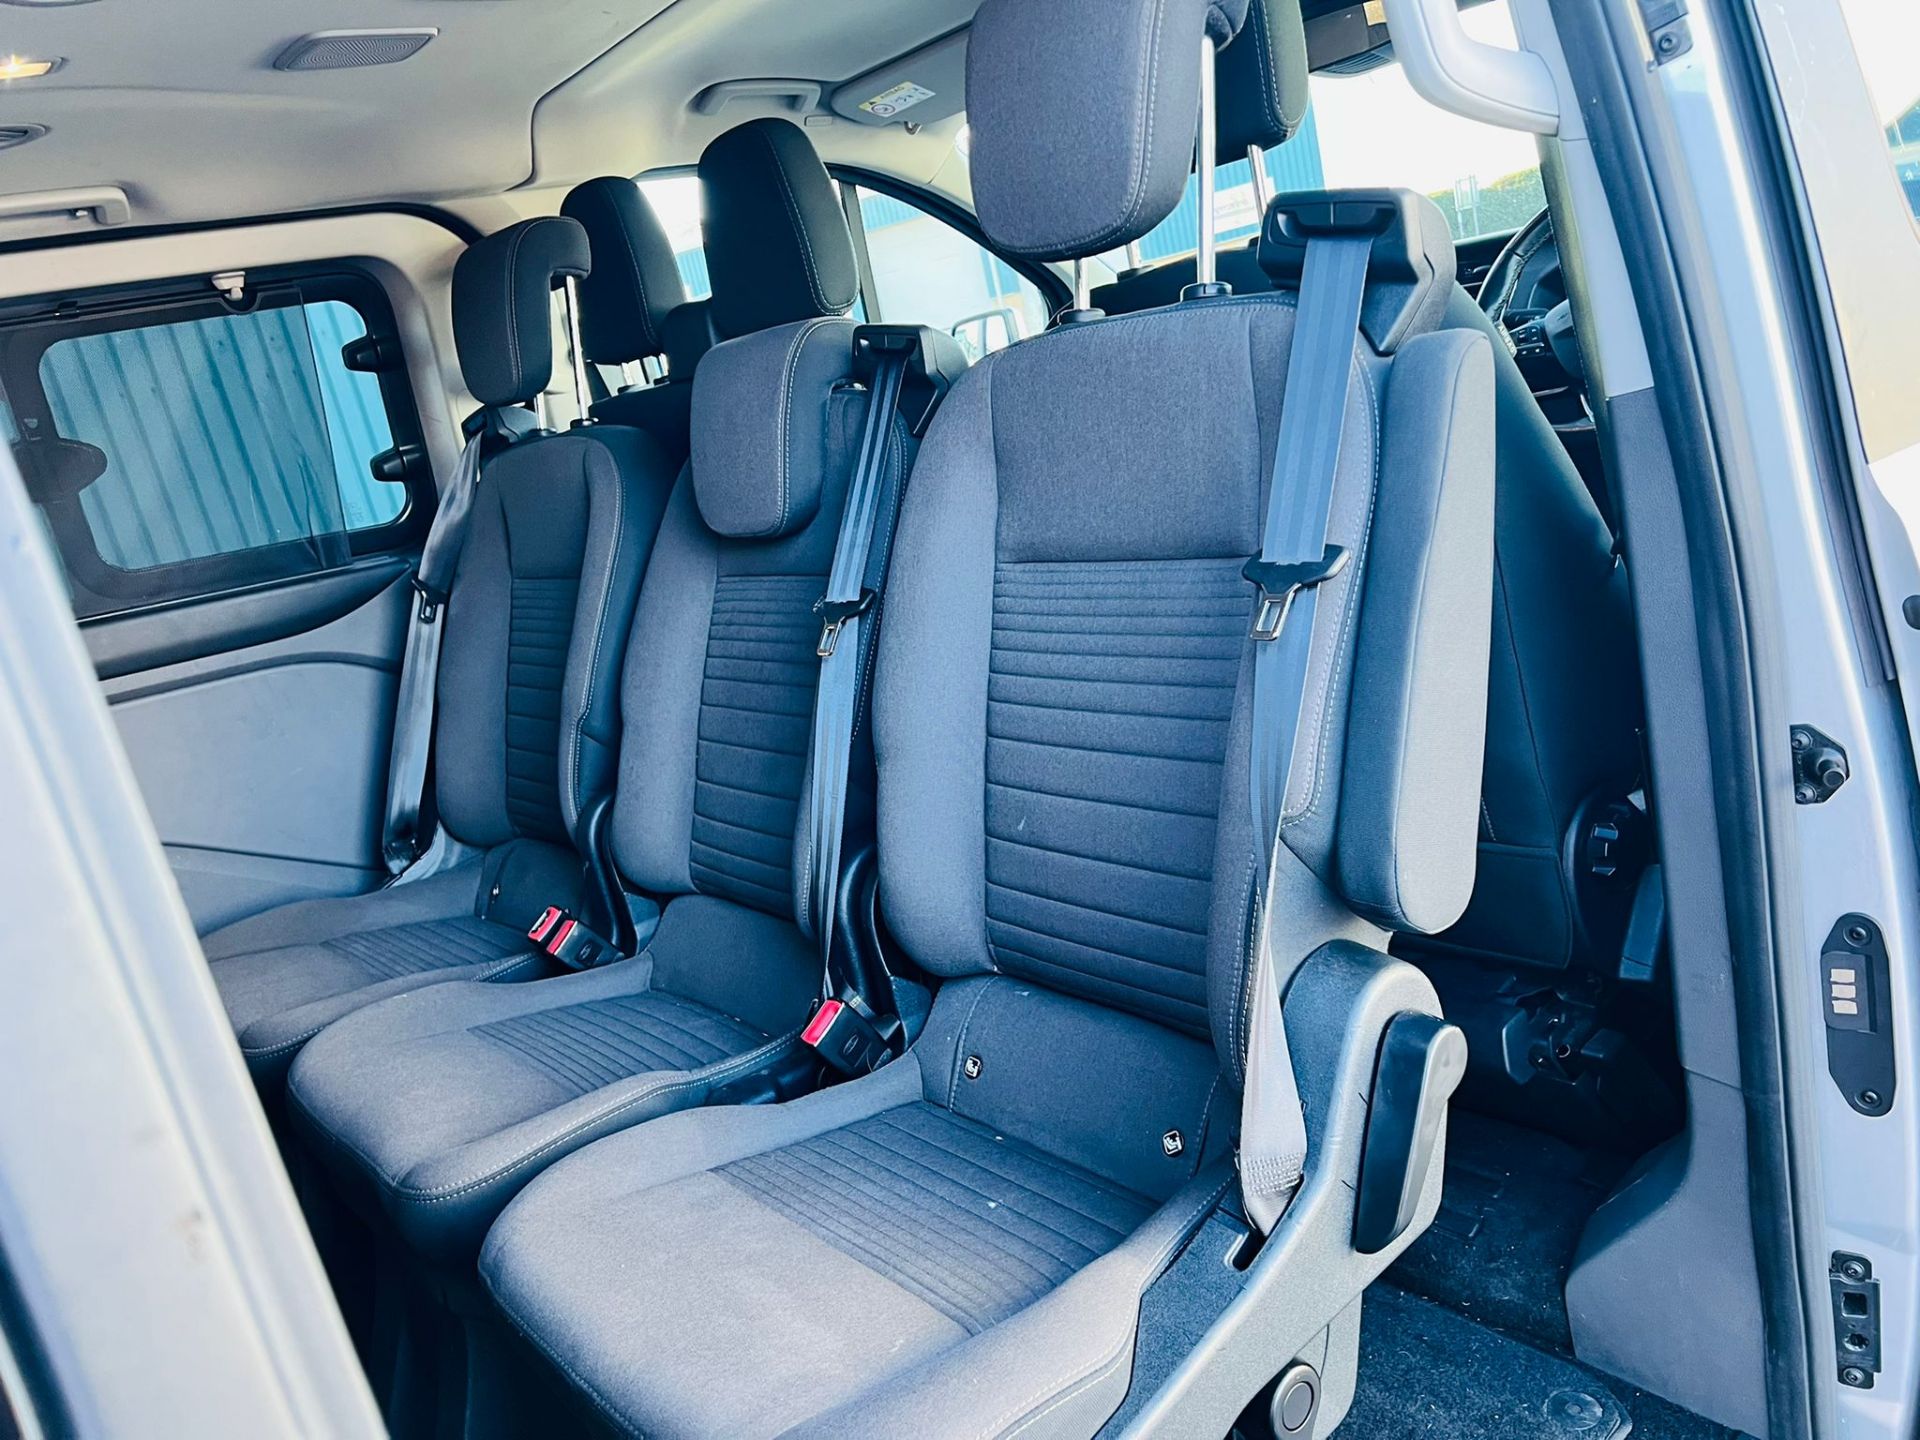 (Reserve Met) Ford Transit Custom 310 130 2.0 Tdci Titanium 9 Seater MiniBus 2019 Model - Air Con - - Image 16 of 36